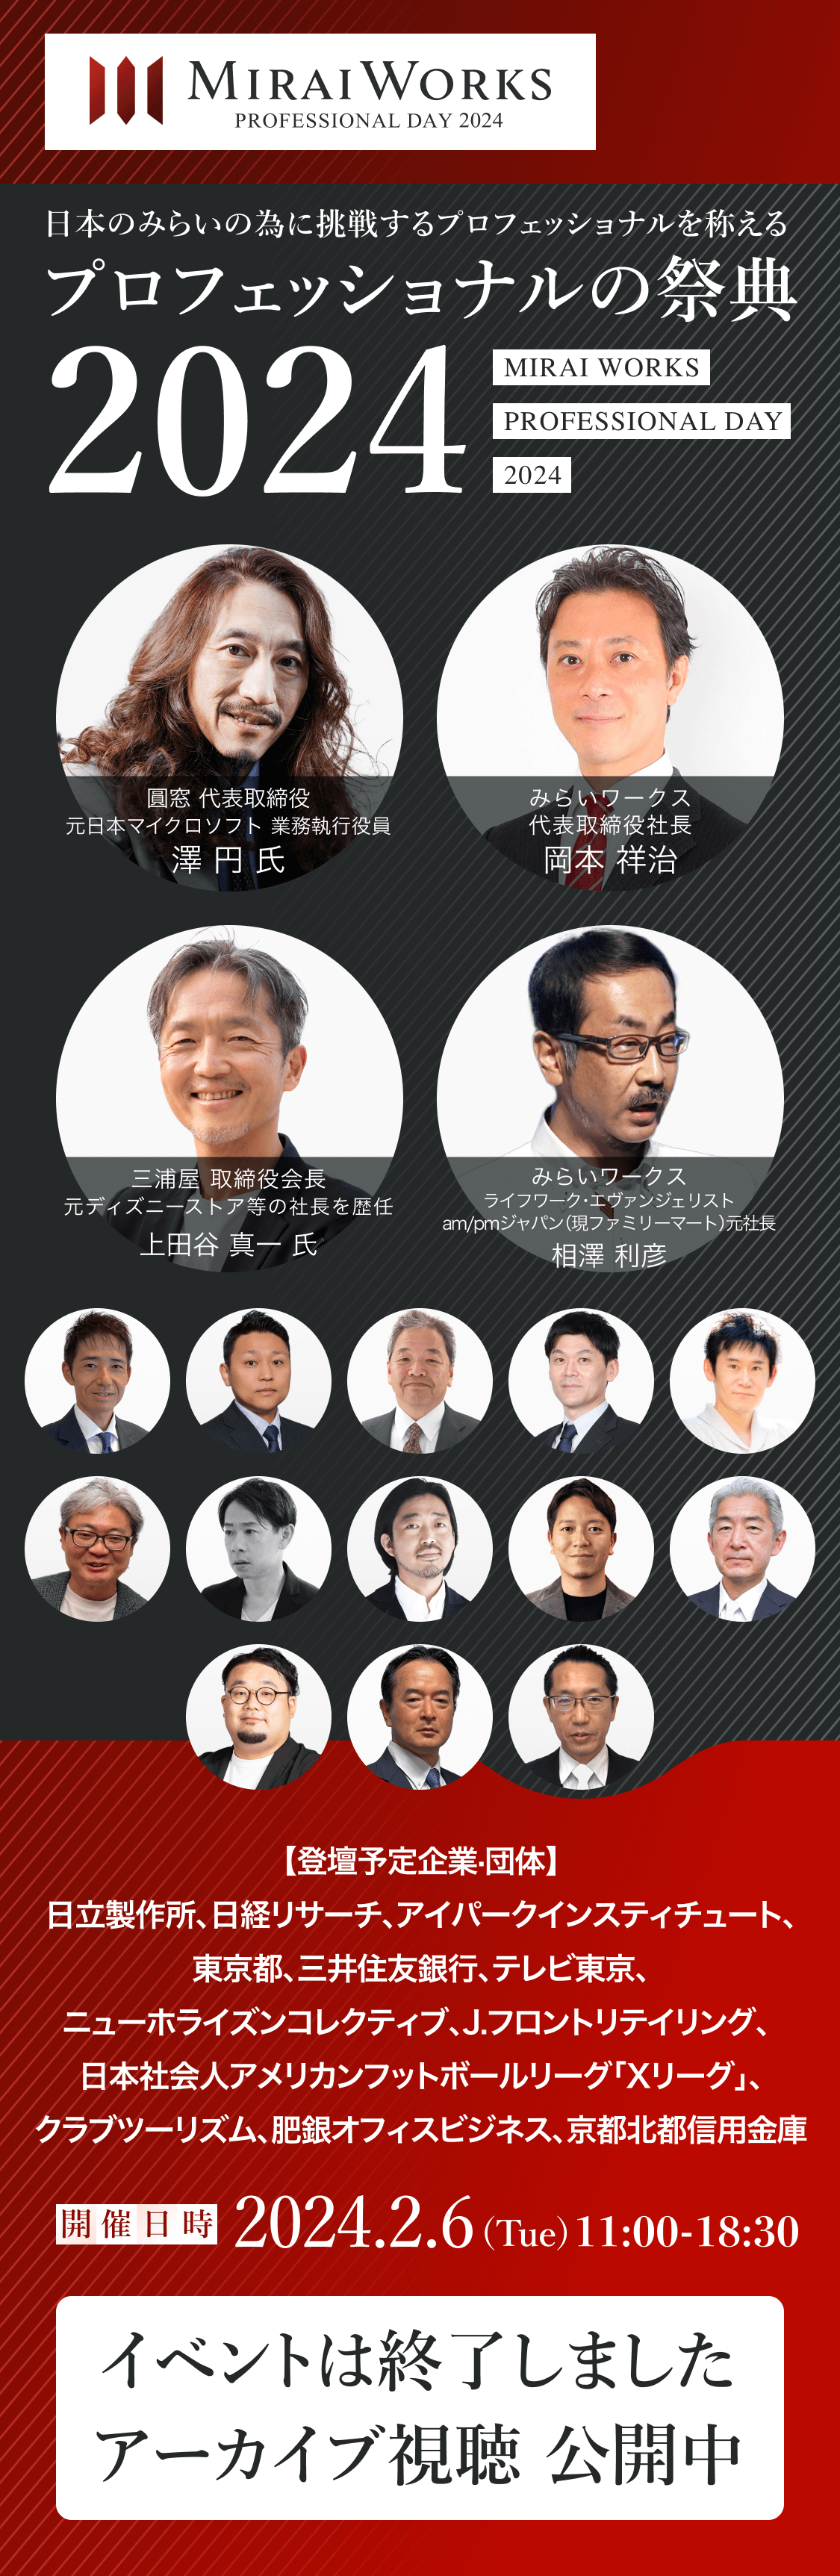 日本のみらいの為に挑戦するプロフェッショナルを称える『プロフェッショナルの祭典2024』 イベントは終了しました アーカイブ視聴 公開中